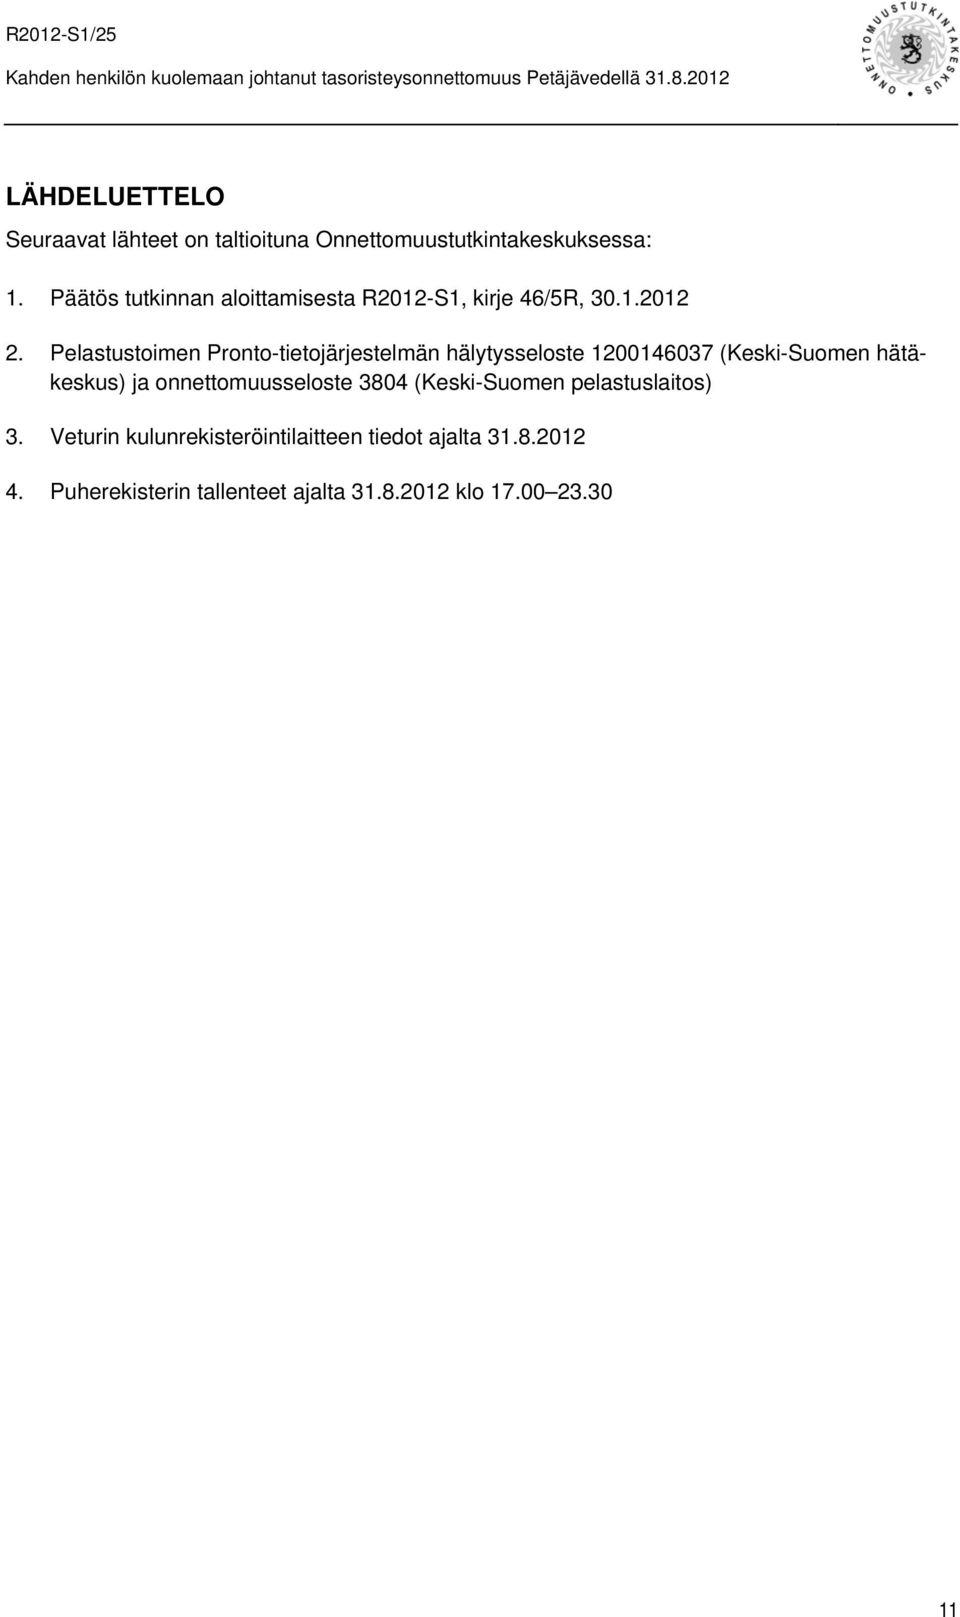 Pelastustoimen Pronto-tietojärjestelmän hälytysseloste 1200146037 (Keski-Suomen hätäkeskus) ja